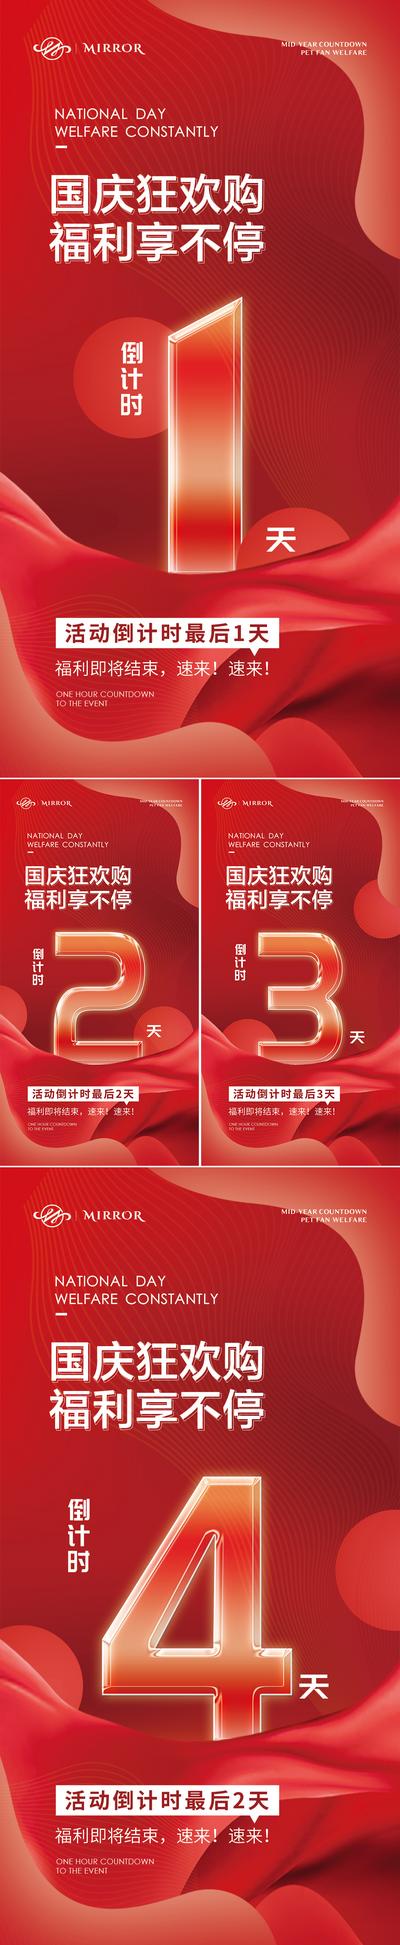 南门网 十一国庆活动倒计时红色系列海报